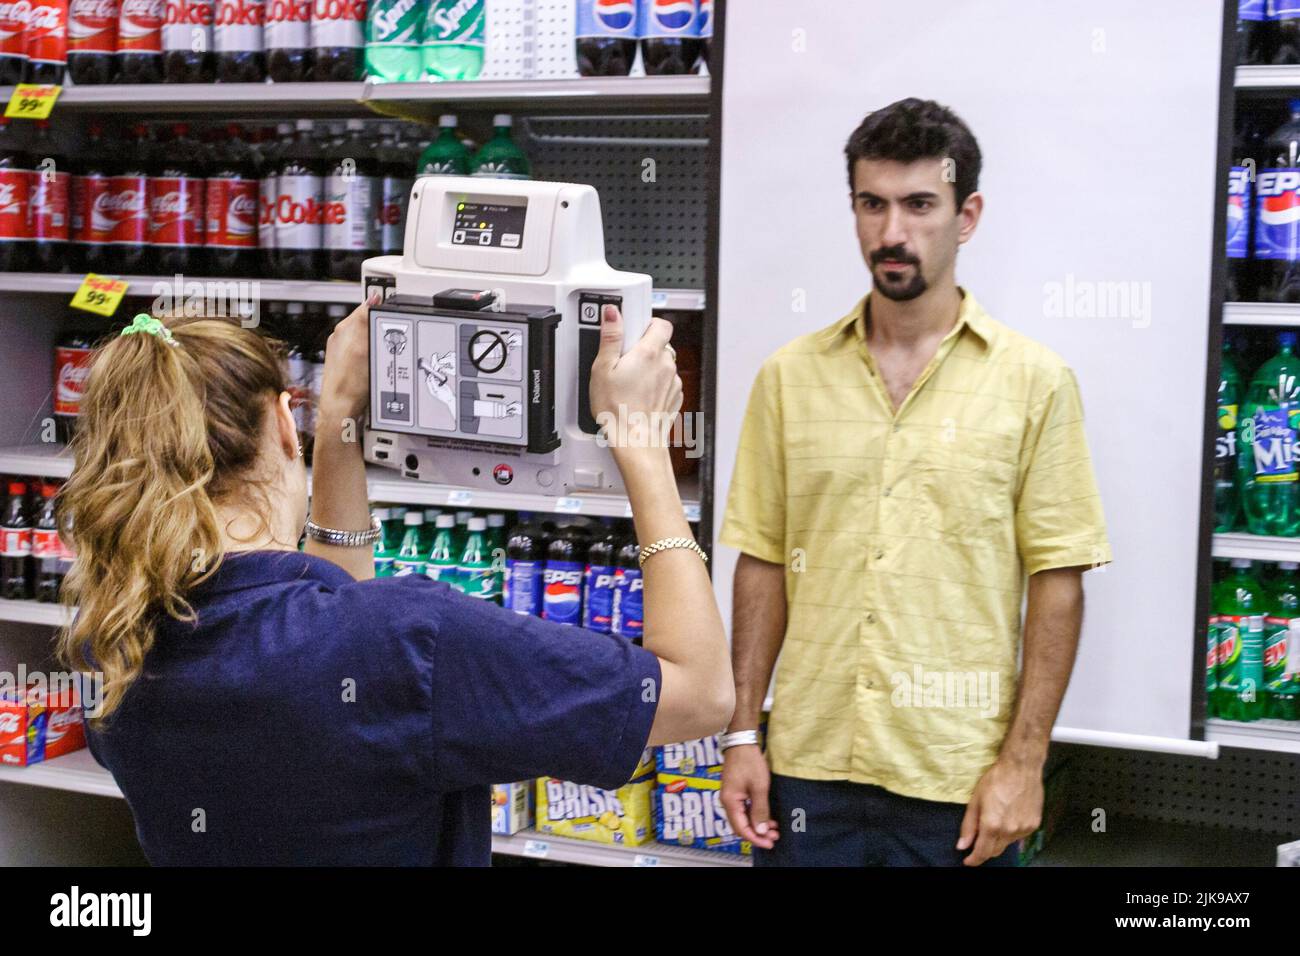 Miami Beach Florida, CVS Pharmacy Eckerd's Drug Store, hispanischer Mann Männer männlicher Kunde posiert, macht Pass Fotogeschäft Mitarbeiter Kamera zu bedienen Stockfoto